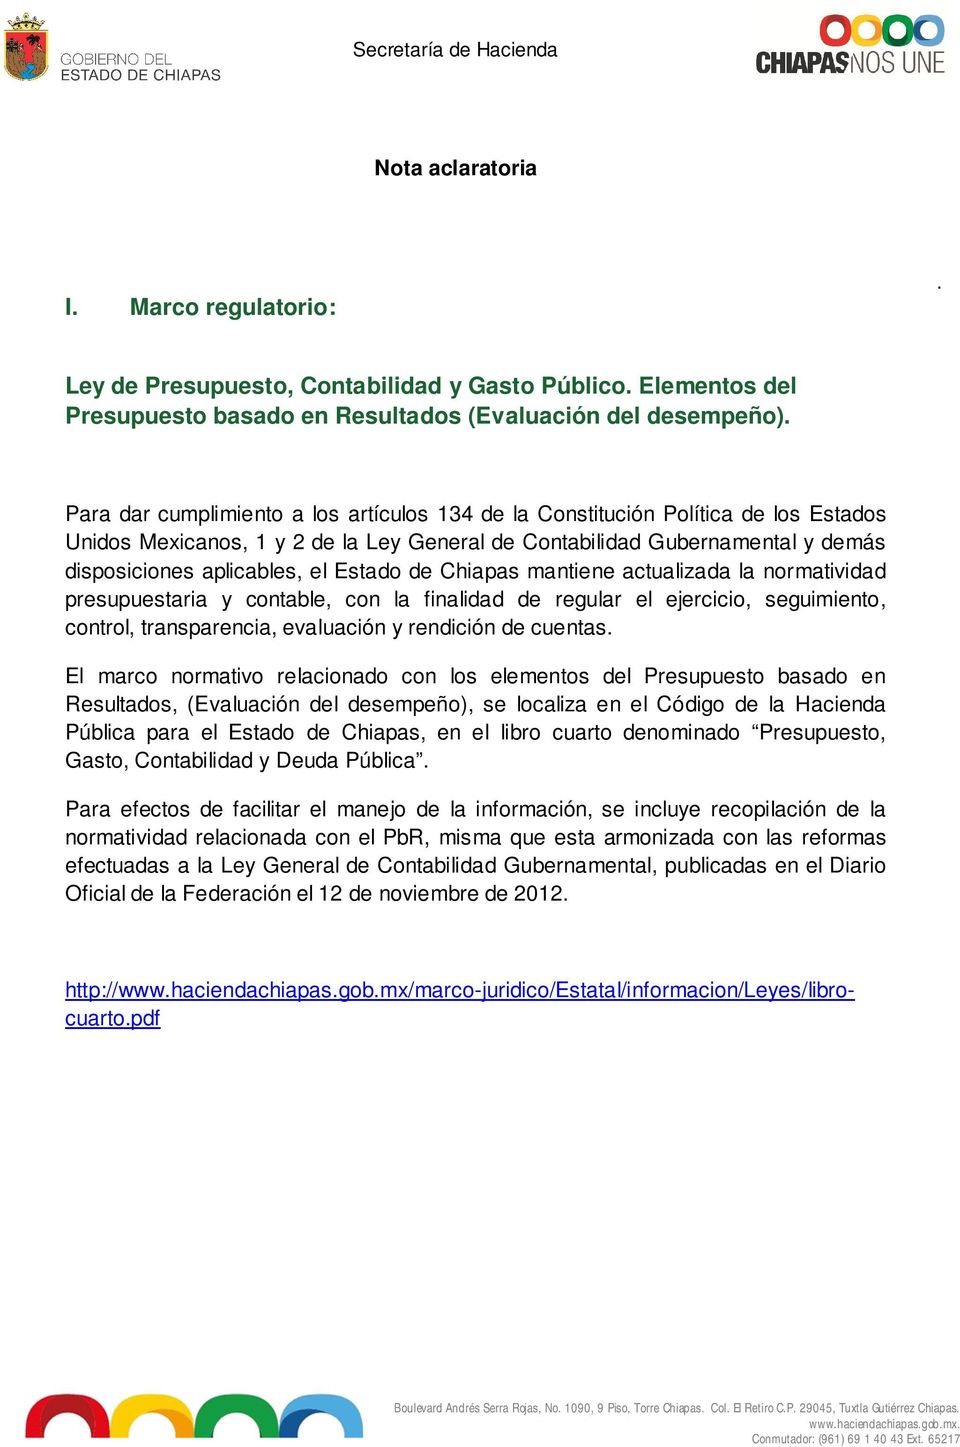 Estado de Chiapas mantiene actualizada la normatividad presupuestaria y contable, con la finalidad de regular el ejercicio, seguimiento, control, transparencia, evaluación y rendición de cuentas.